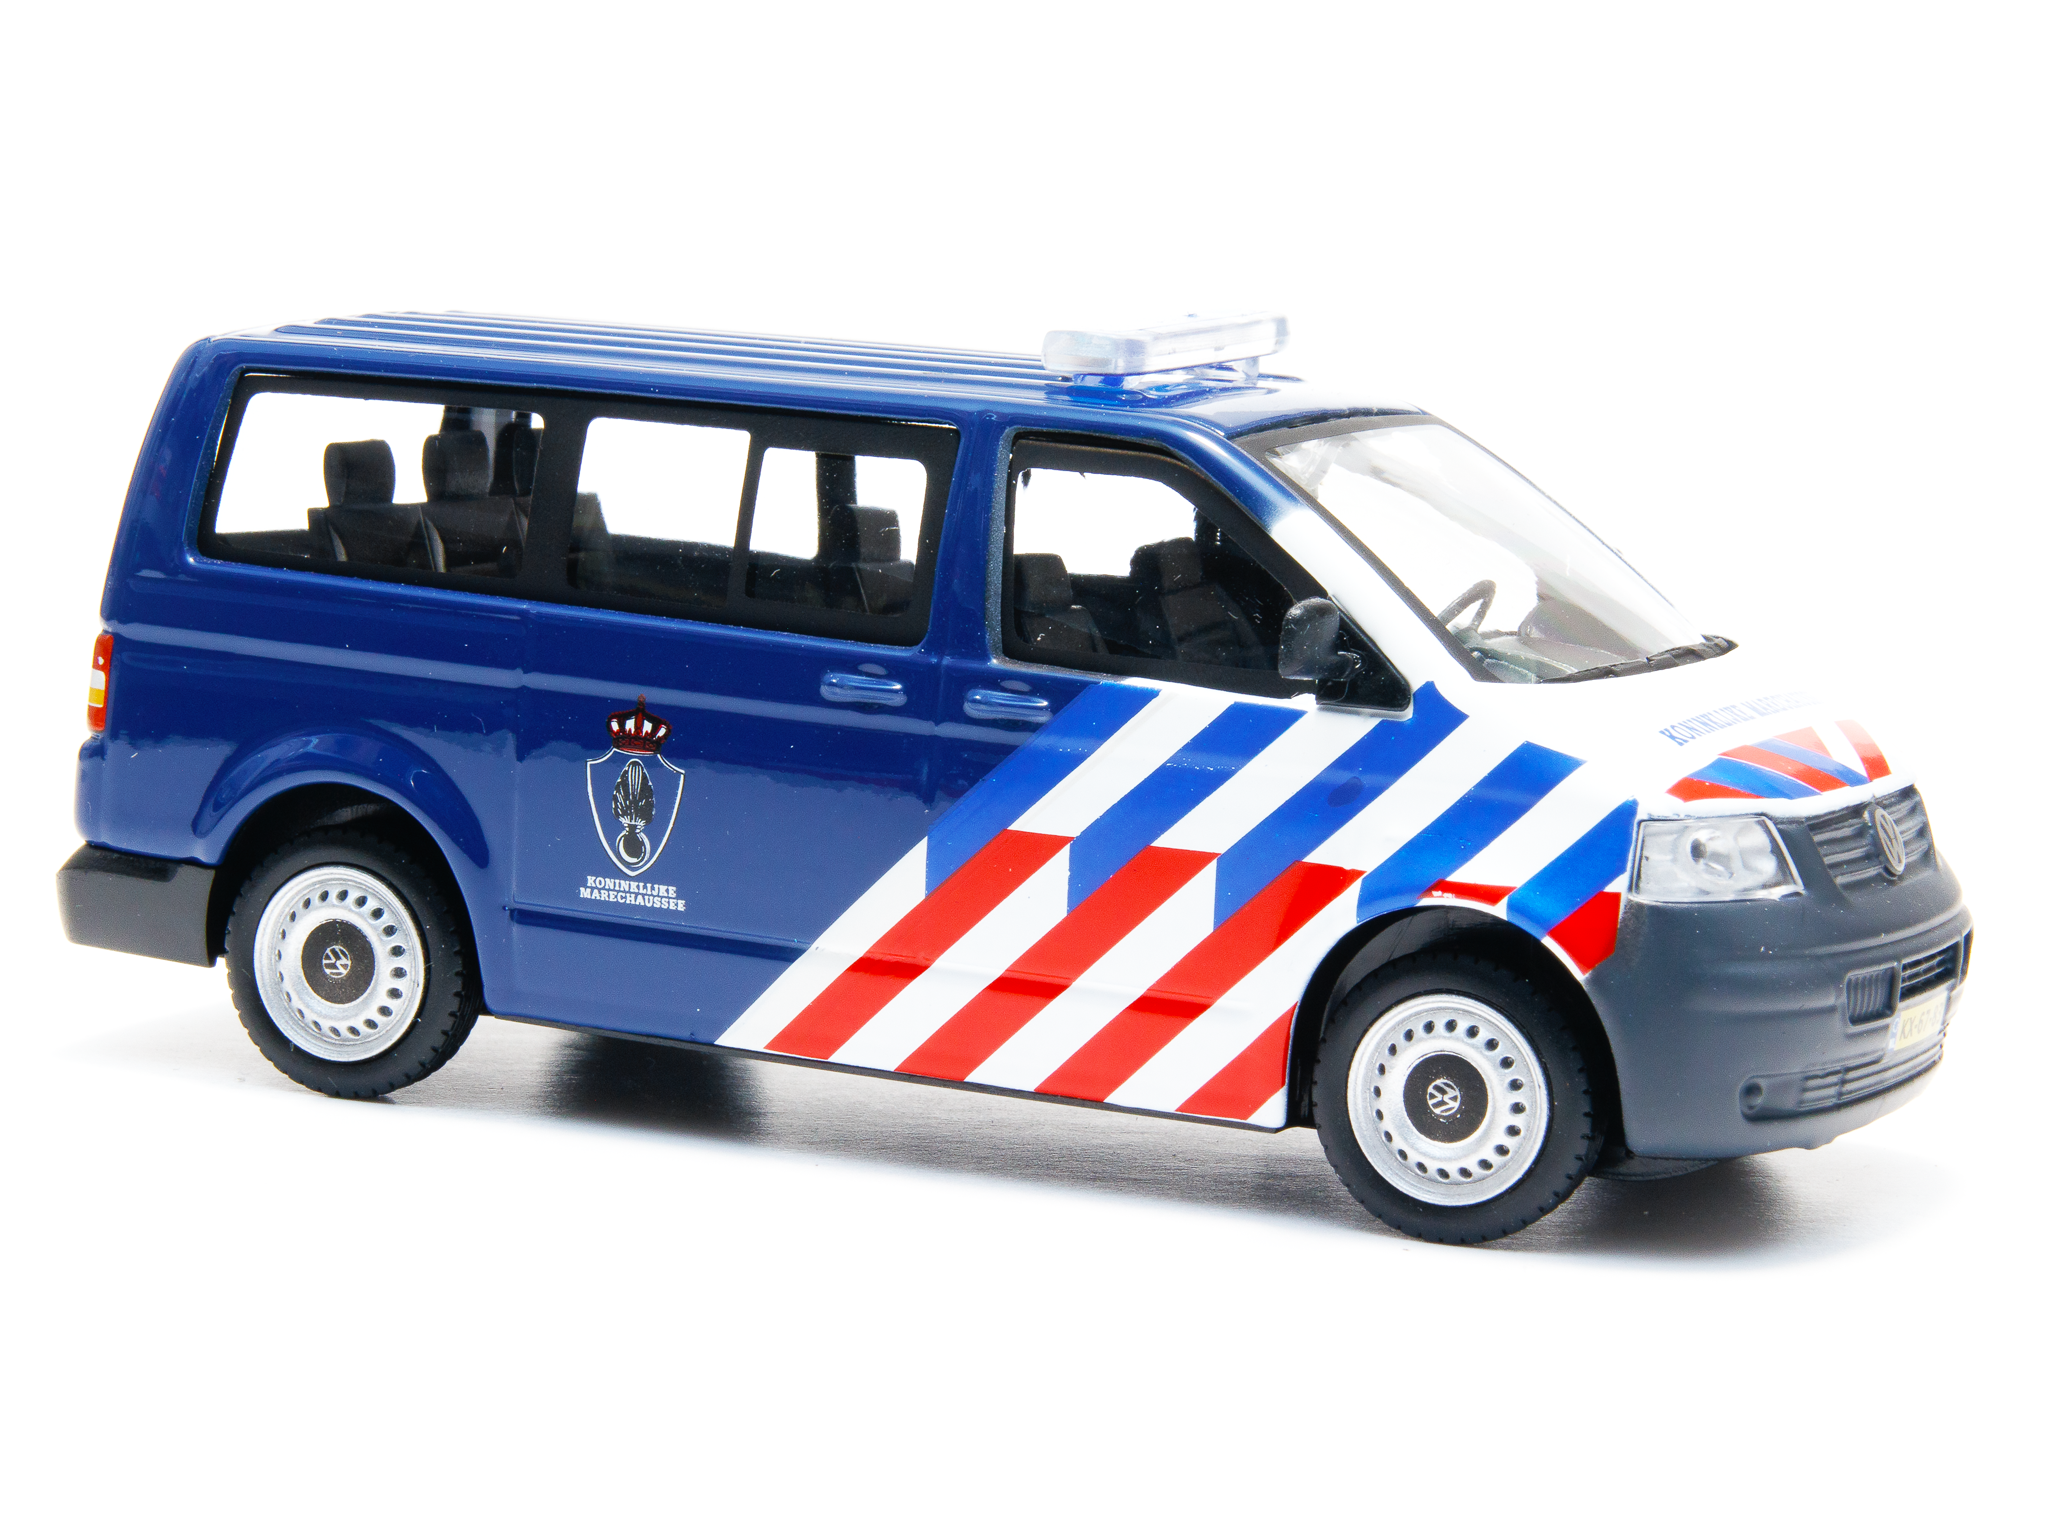 Volkswagen T5 Multi Van Marechaussee NL- 1:43 Scale Diecast Police Van